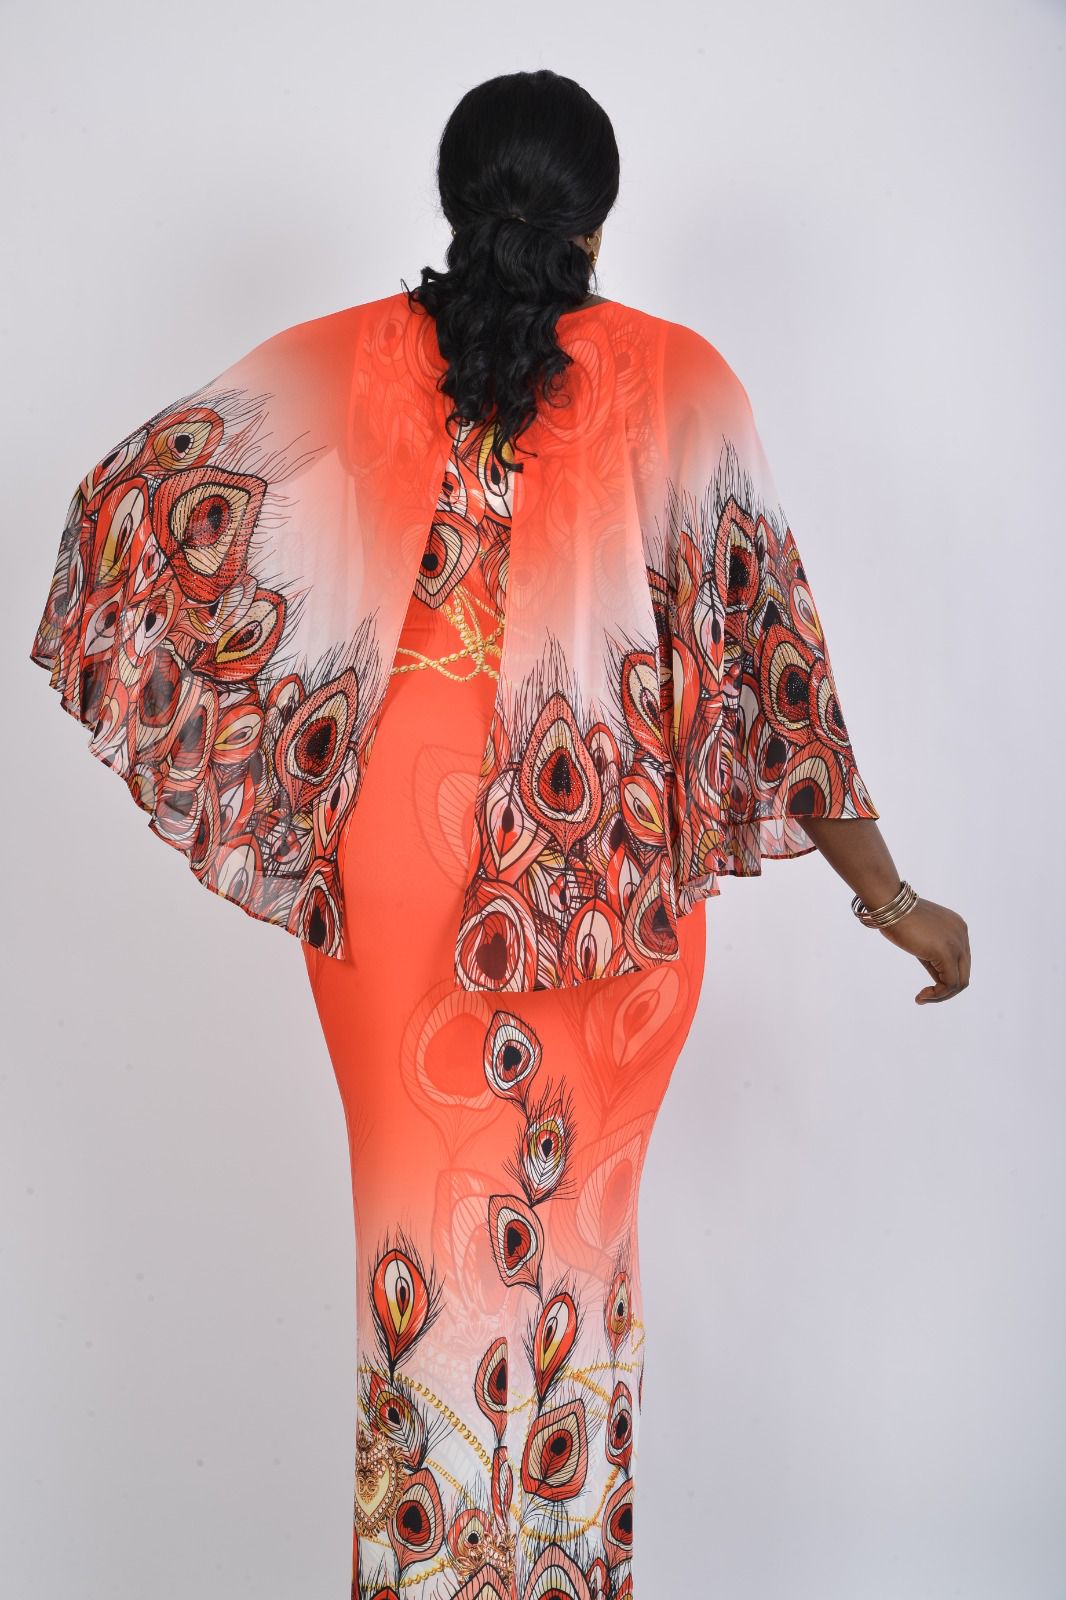 Queens Lycra orange peacock design dress - 